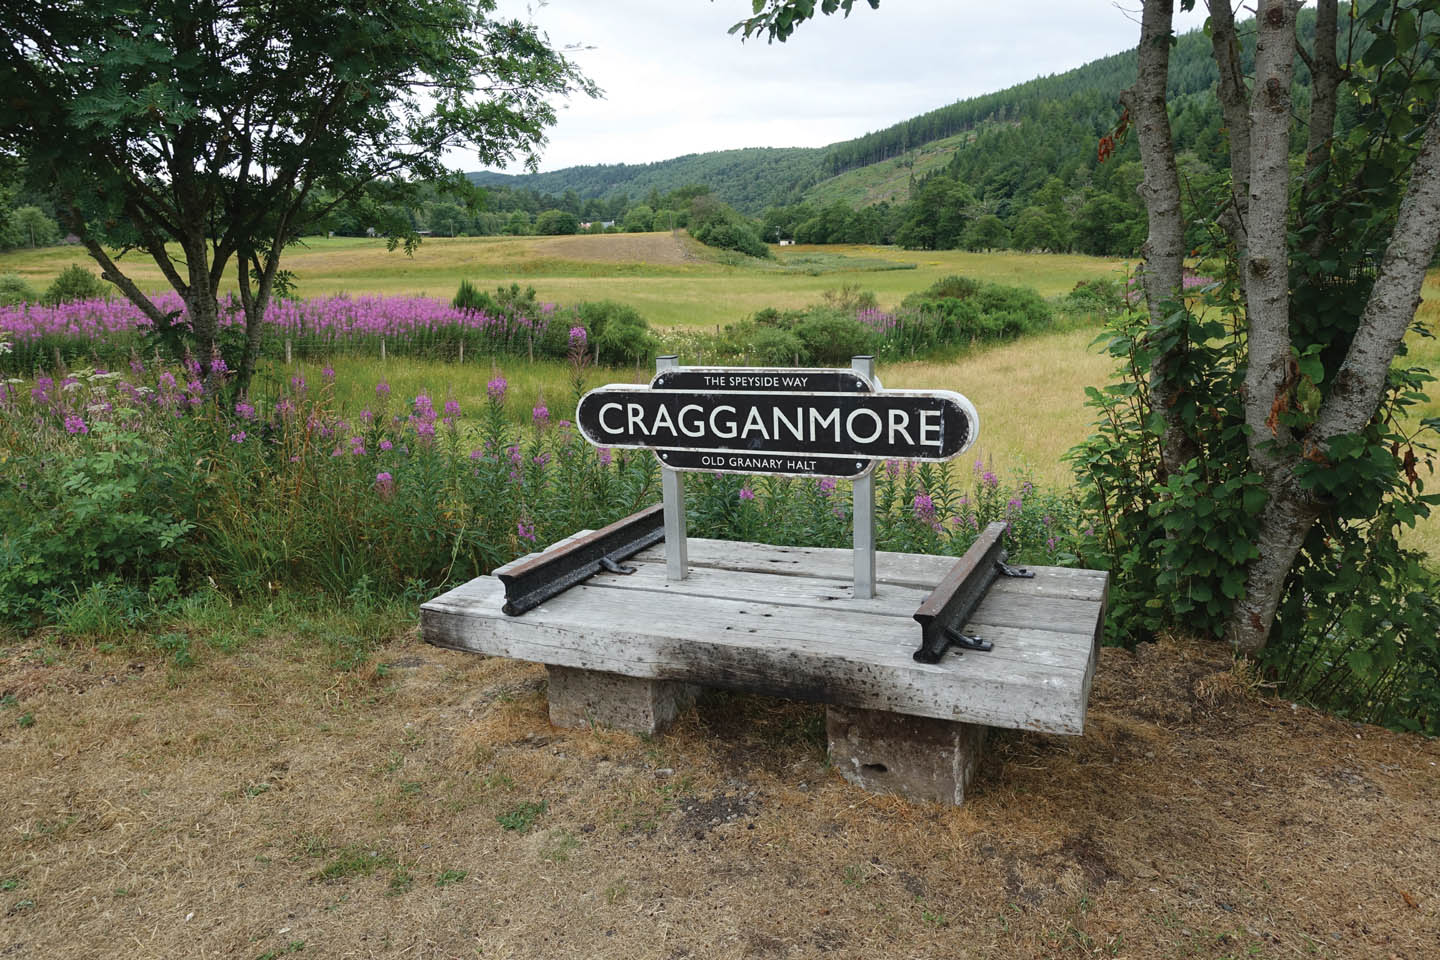 Craggammore-Schild auf einer Holzkonstruktion mit Bahnschienen. Im Hintergrund das grüne Tal des River Spey.